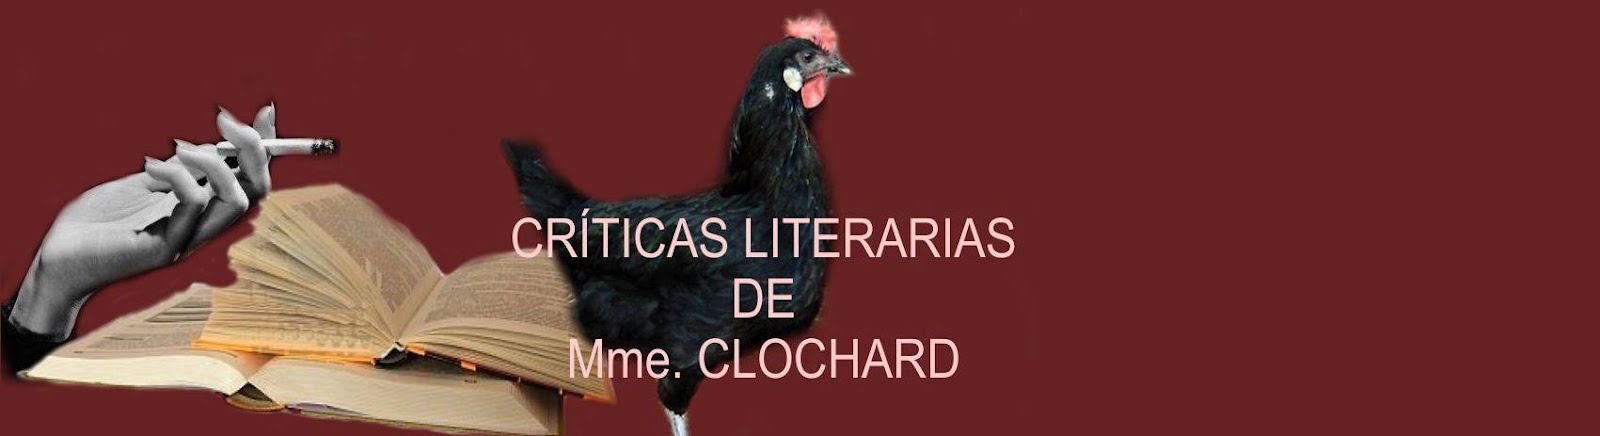 Críticas literarias de Mme. Clochard